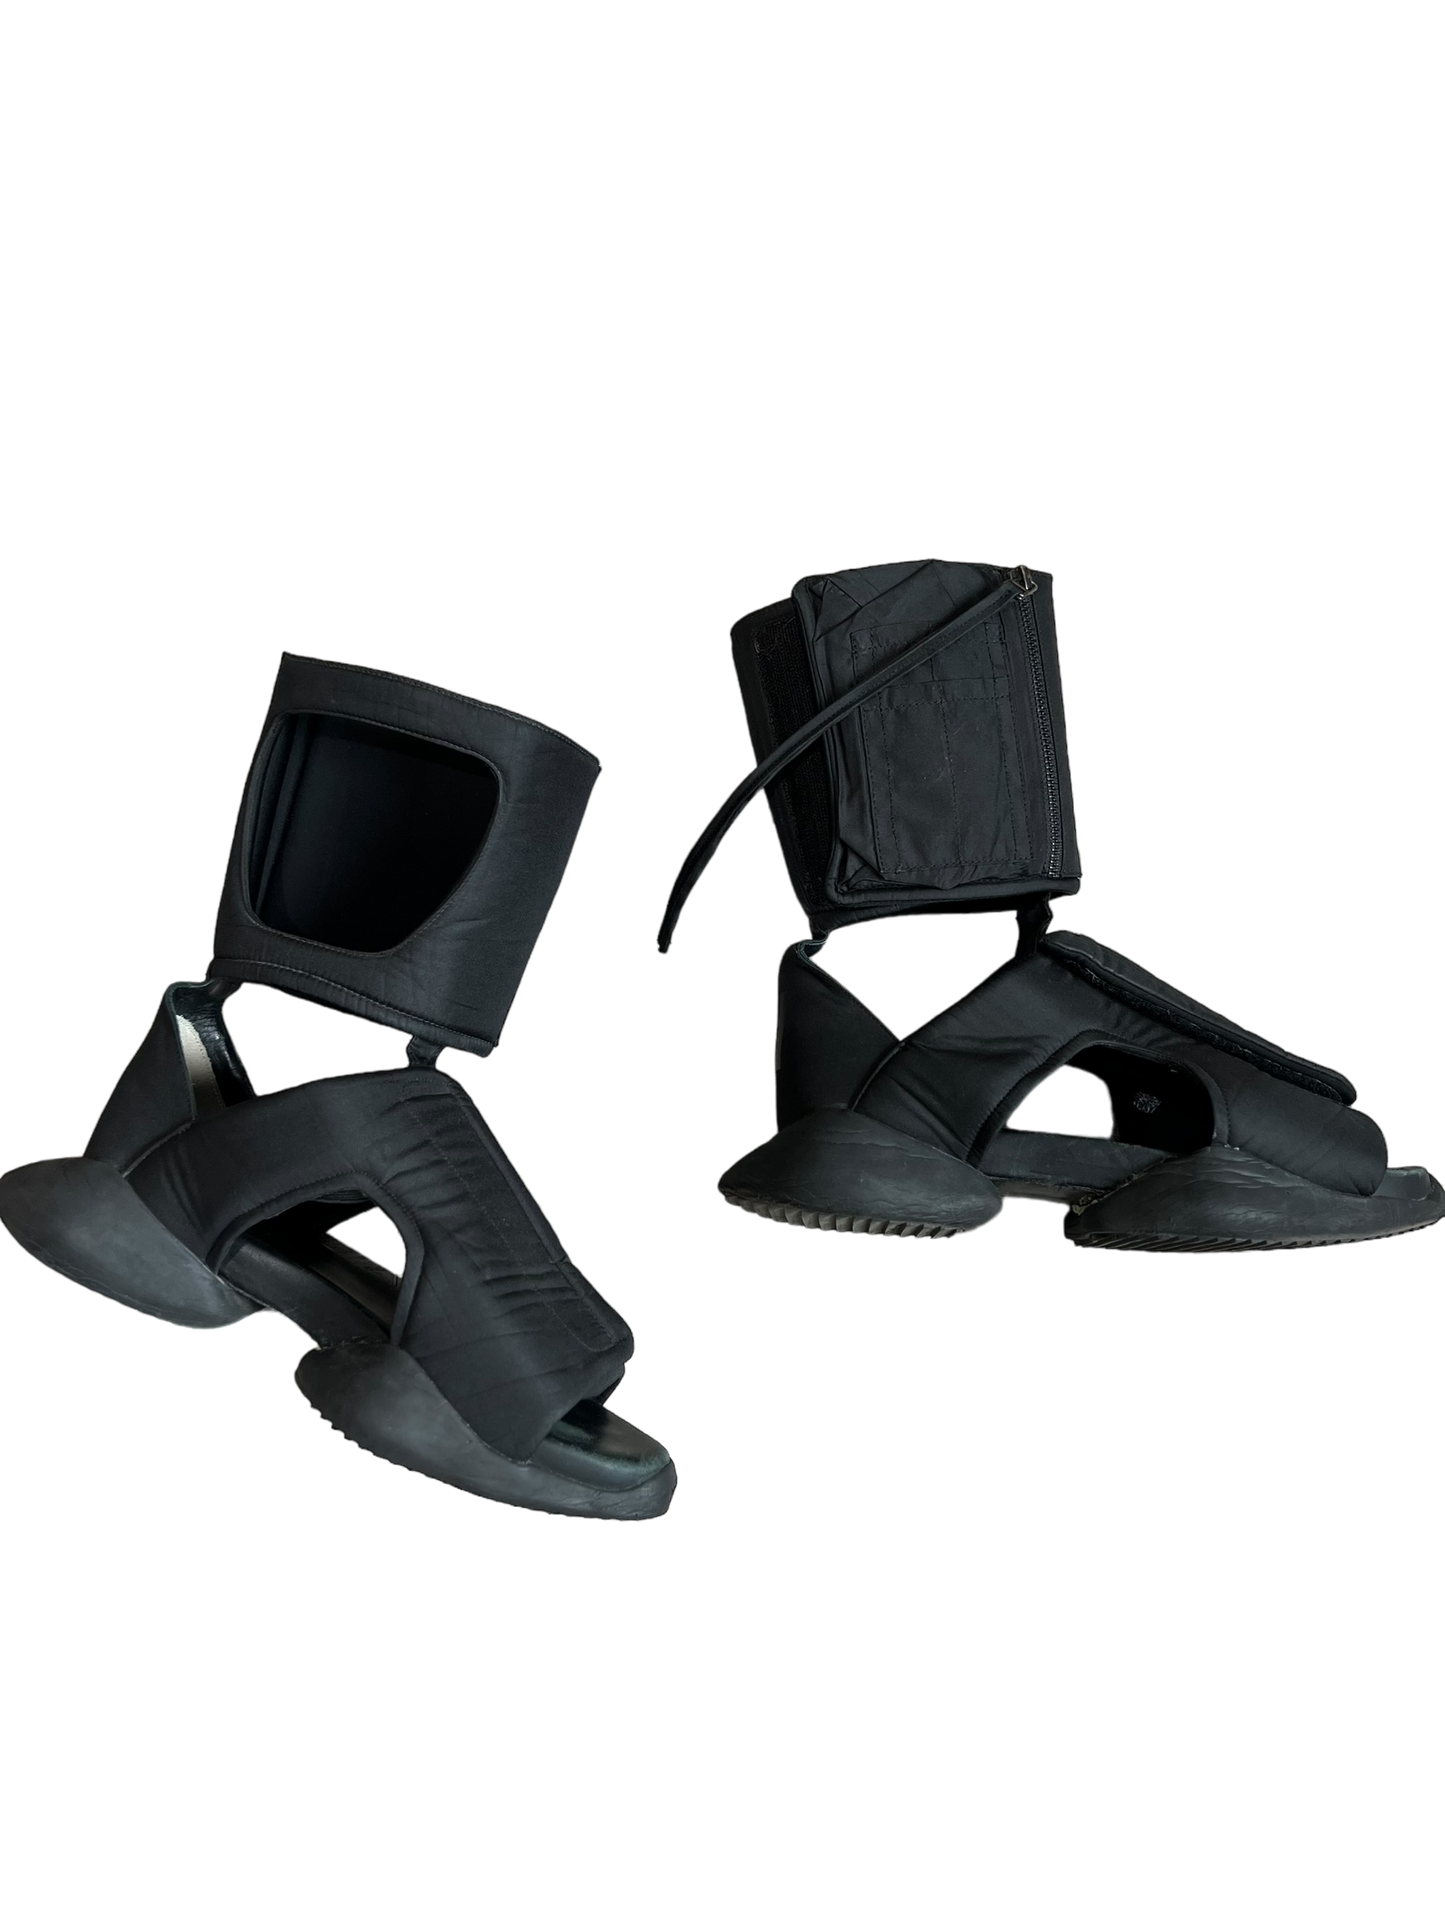 Rick Owens x adidas Cargo Sandal